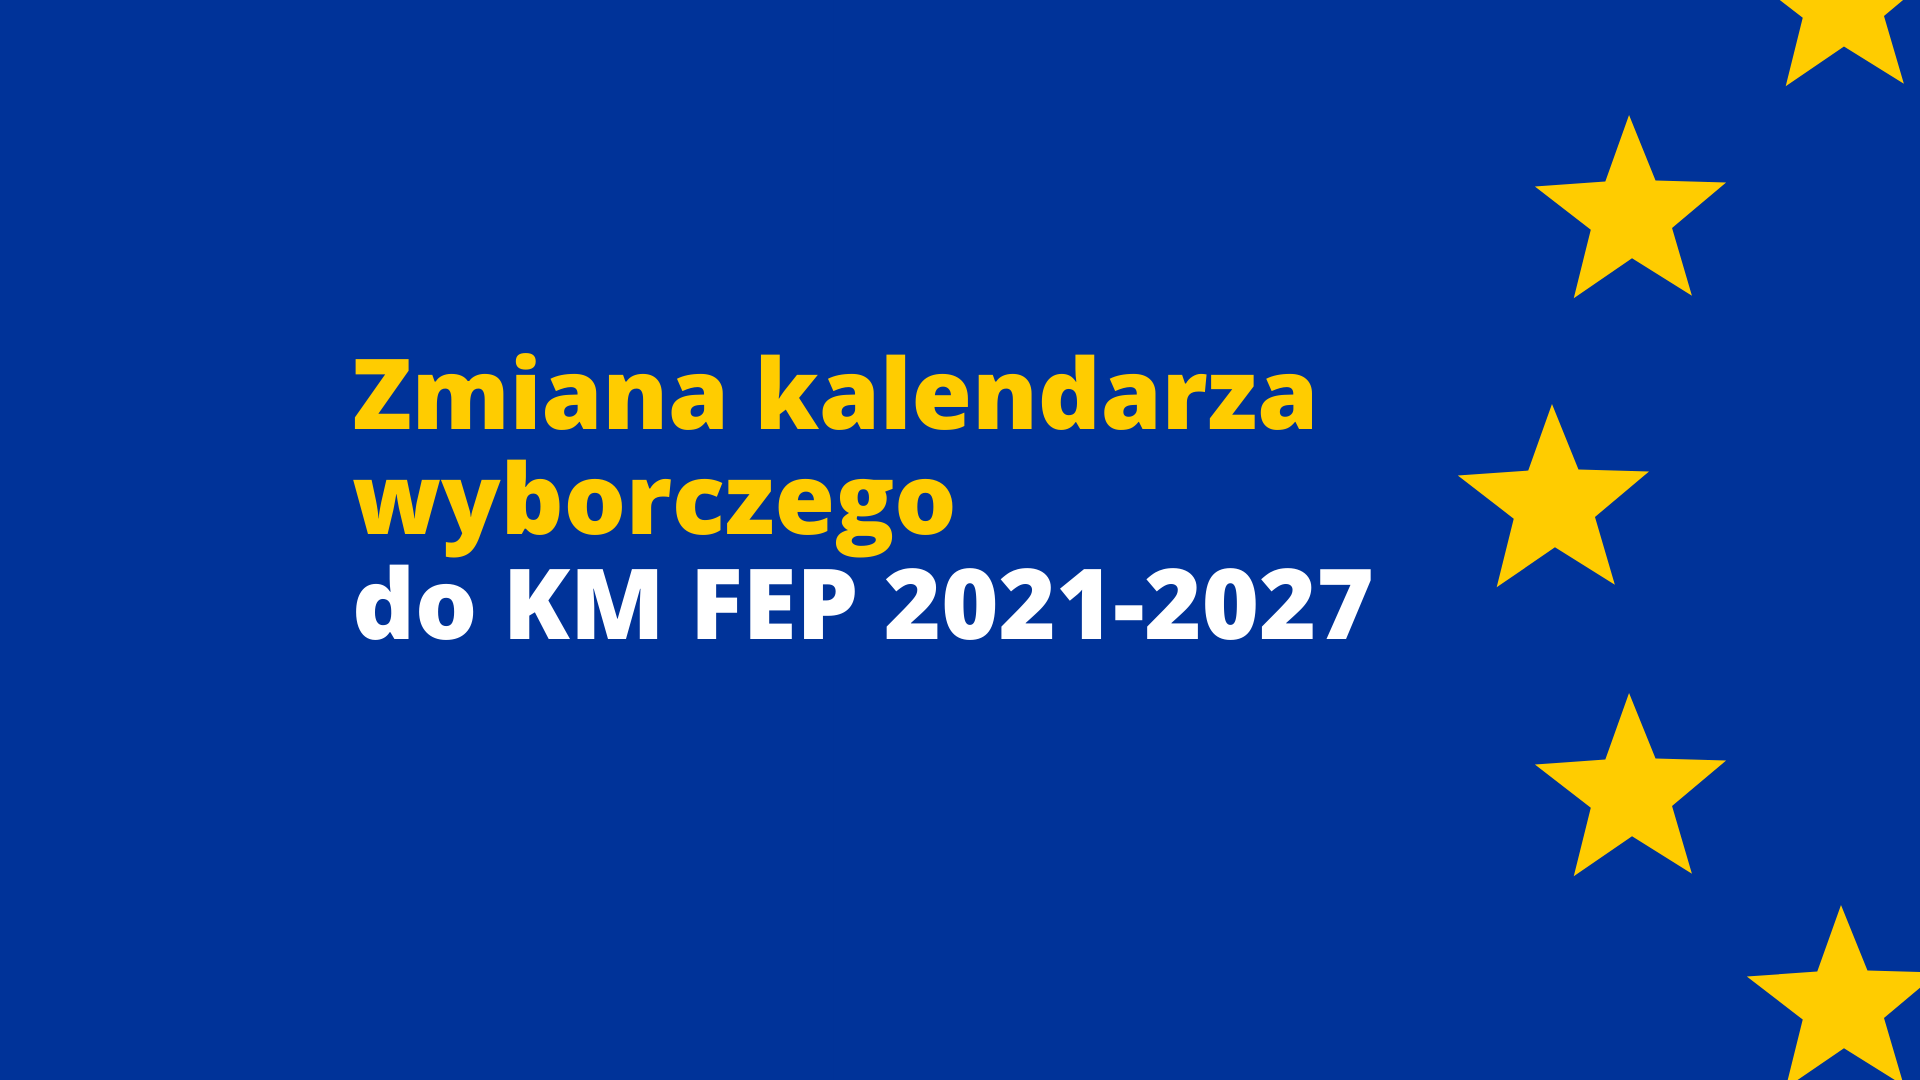 Zmiana kalendarza wyborczego do wyboru KM FEP 2021-2027